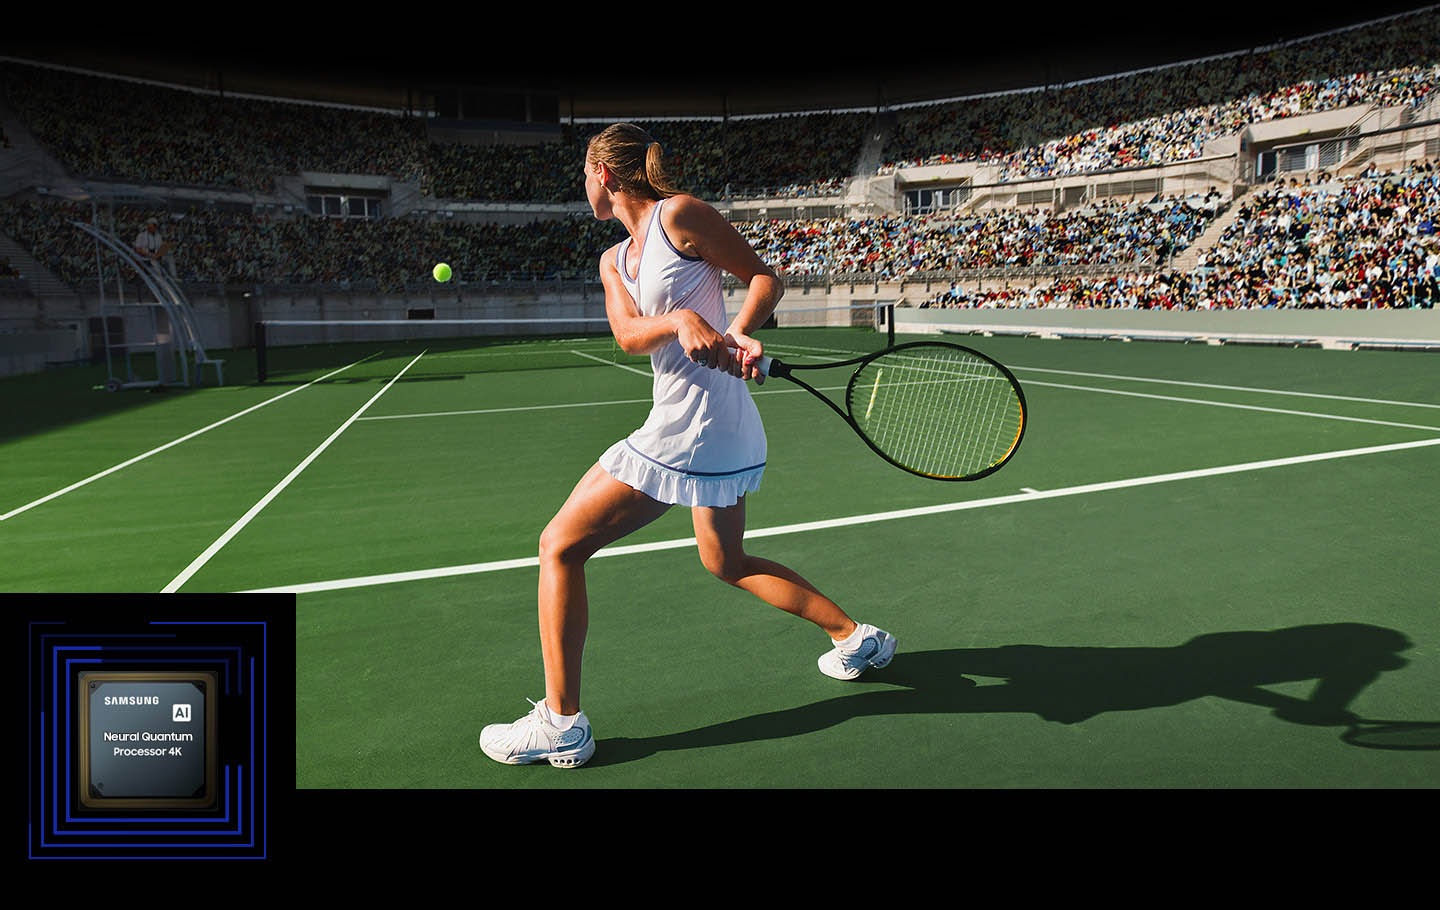 Ženska igra tenis pred veliko množico. Nevralni kvantni procesor 4K obdela številne prikazane predmete in izboljša celotno sceno. Nevralni kvantni procesor 4K je prikazan v spodnjem levem kotu.